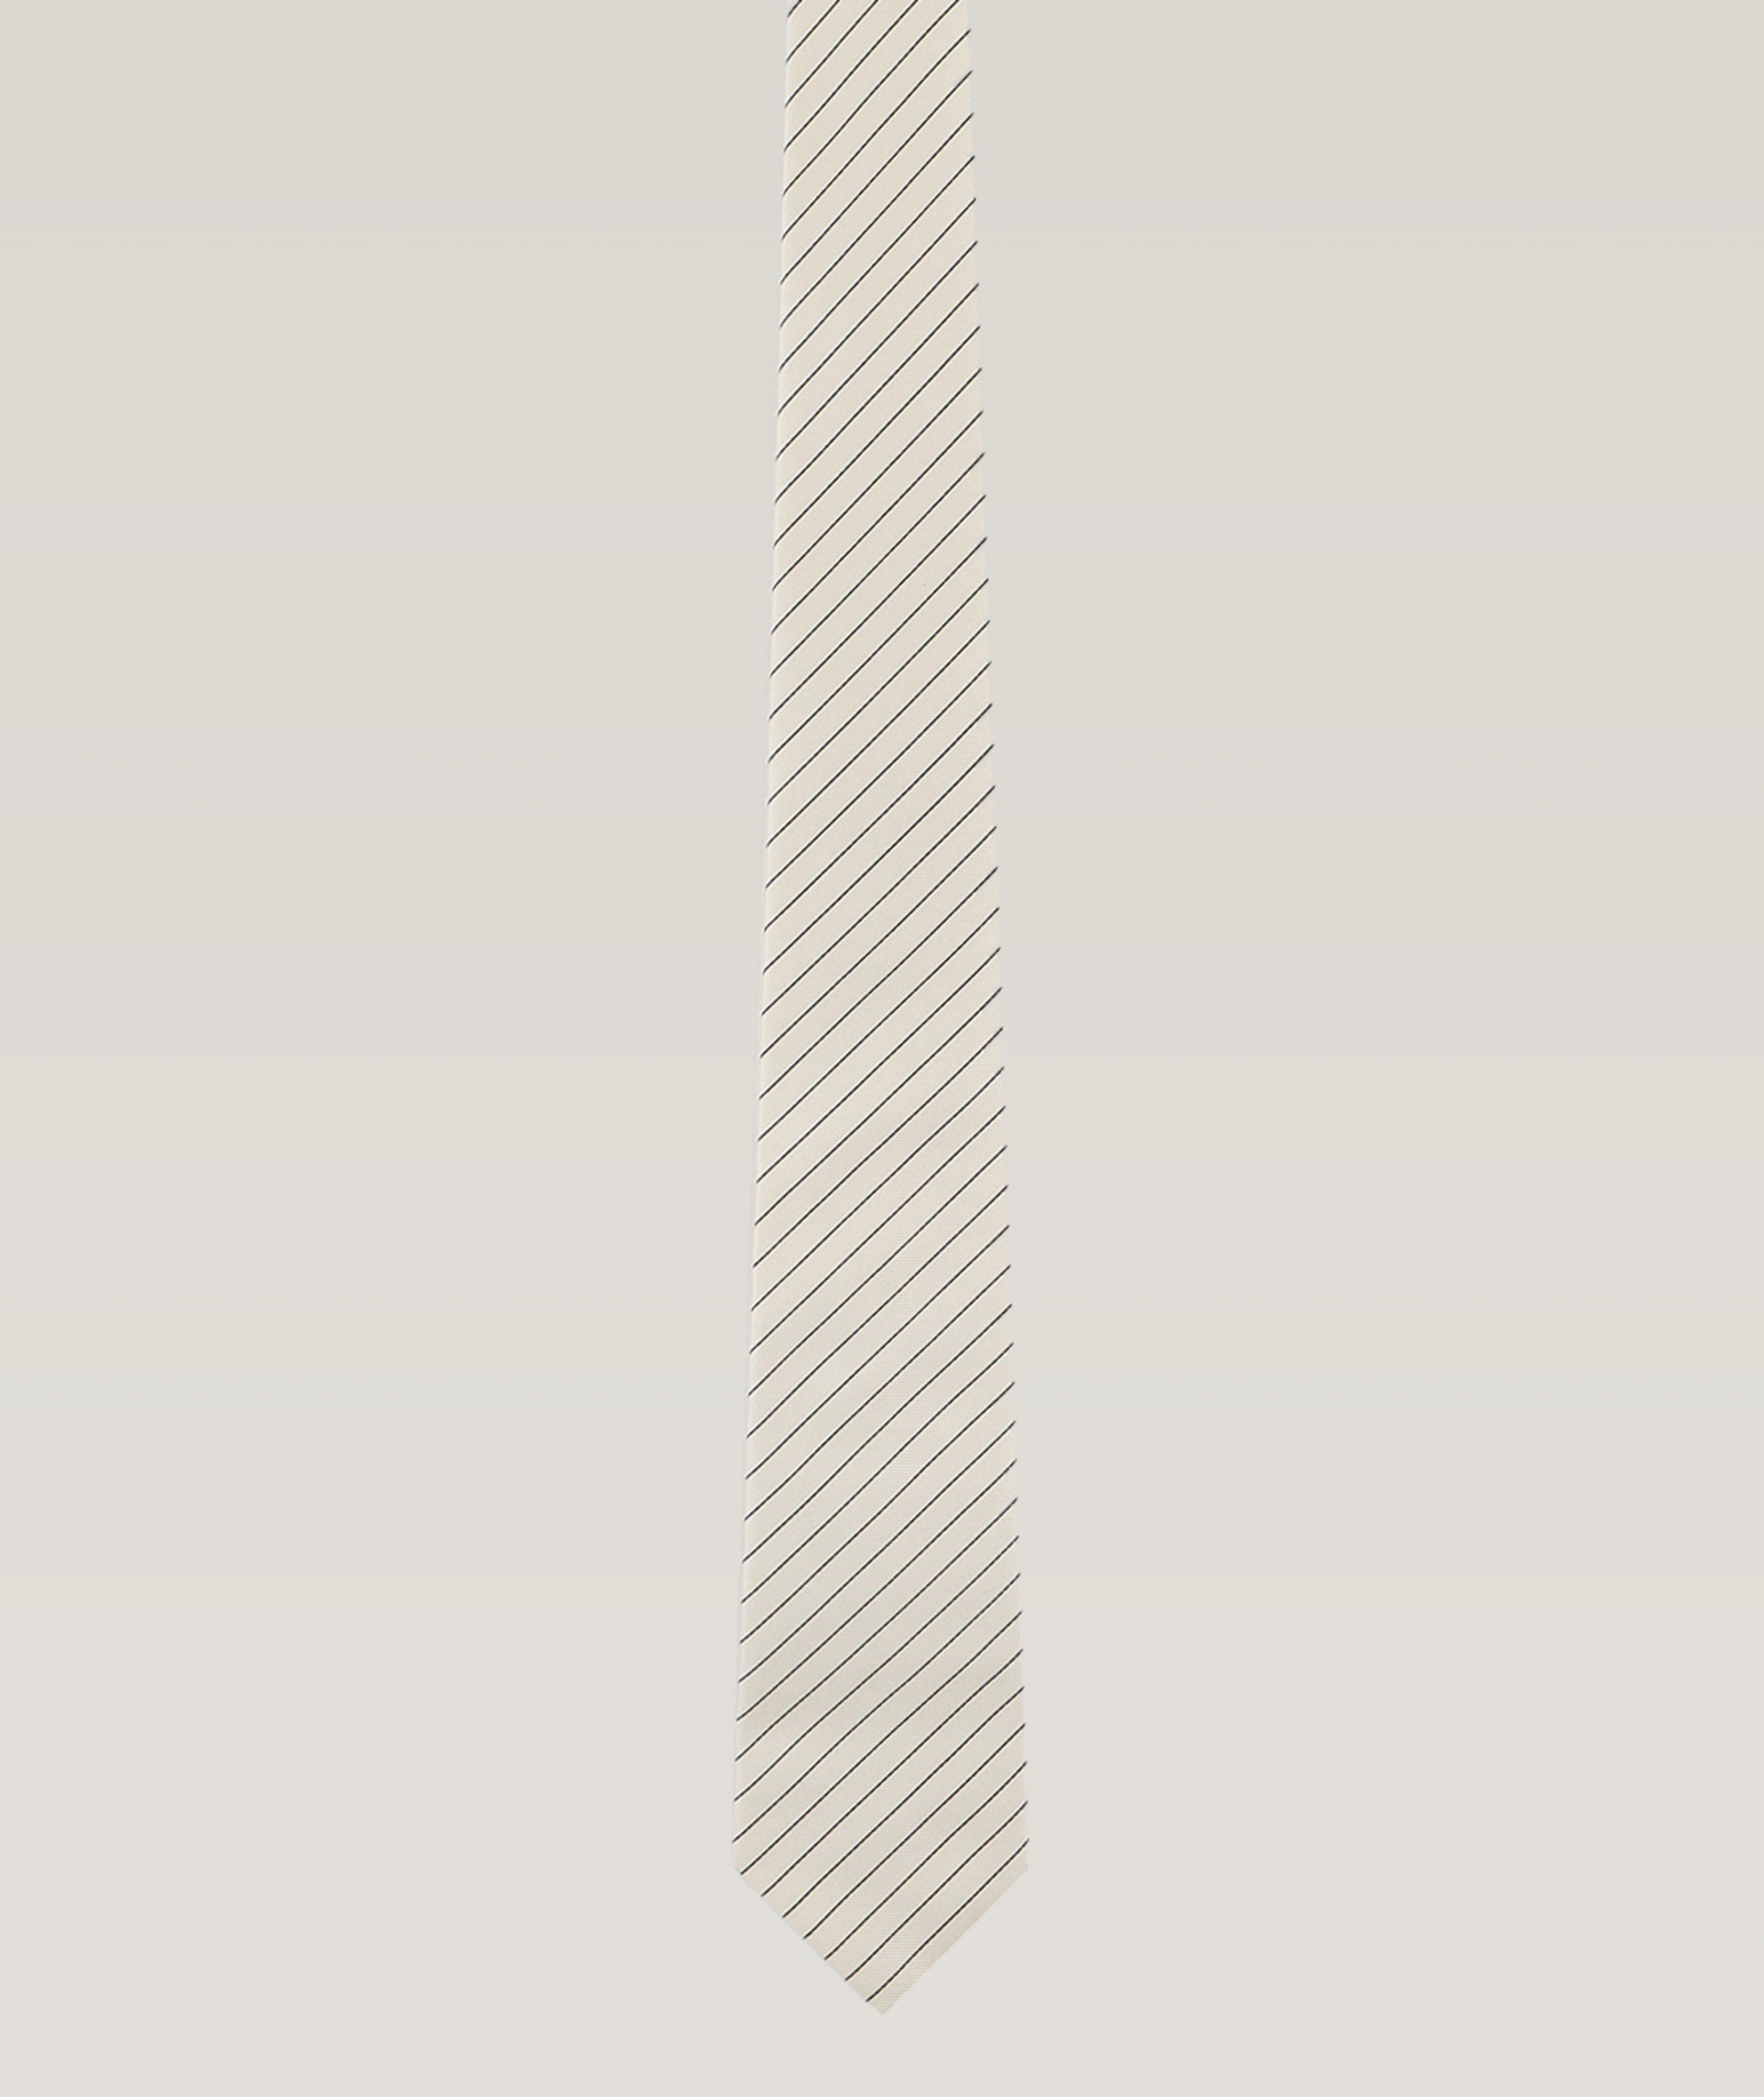 Jacquard Striped Silk Tie  image 0